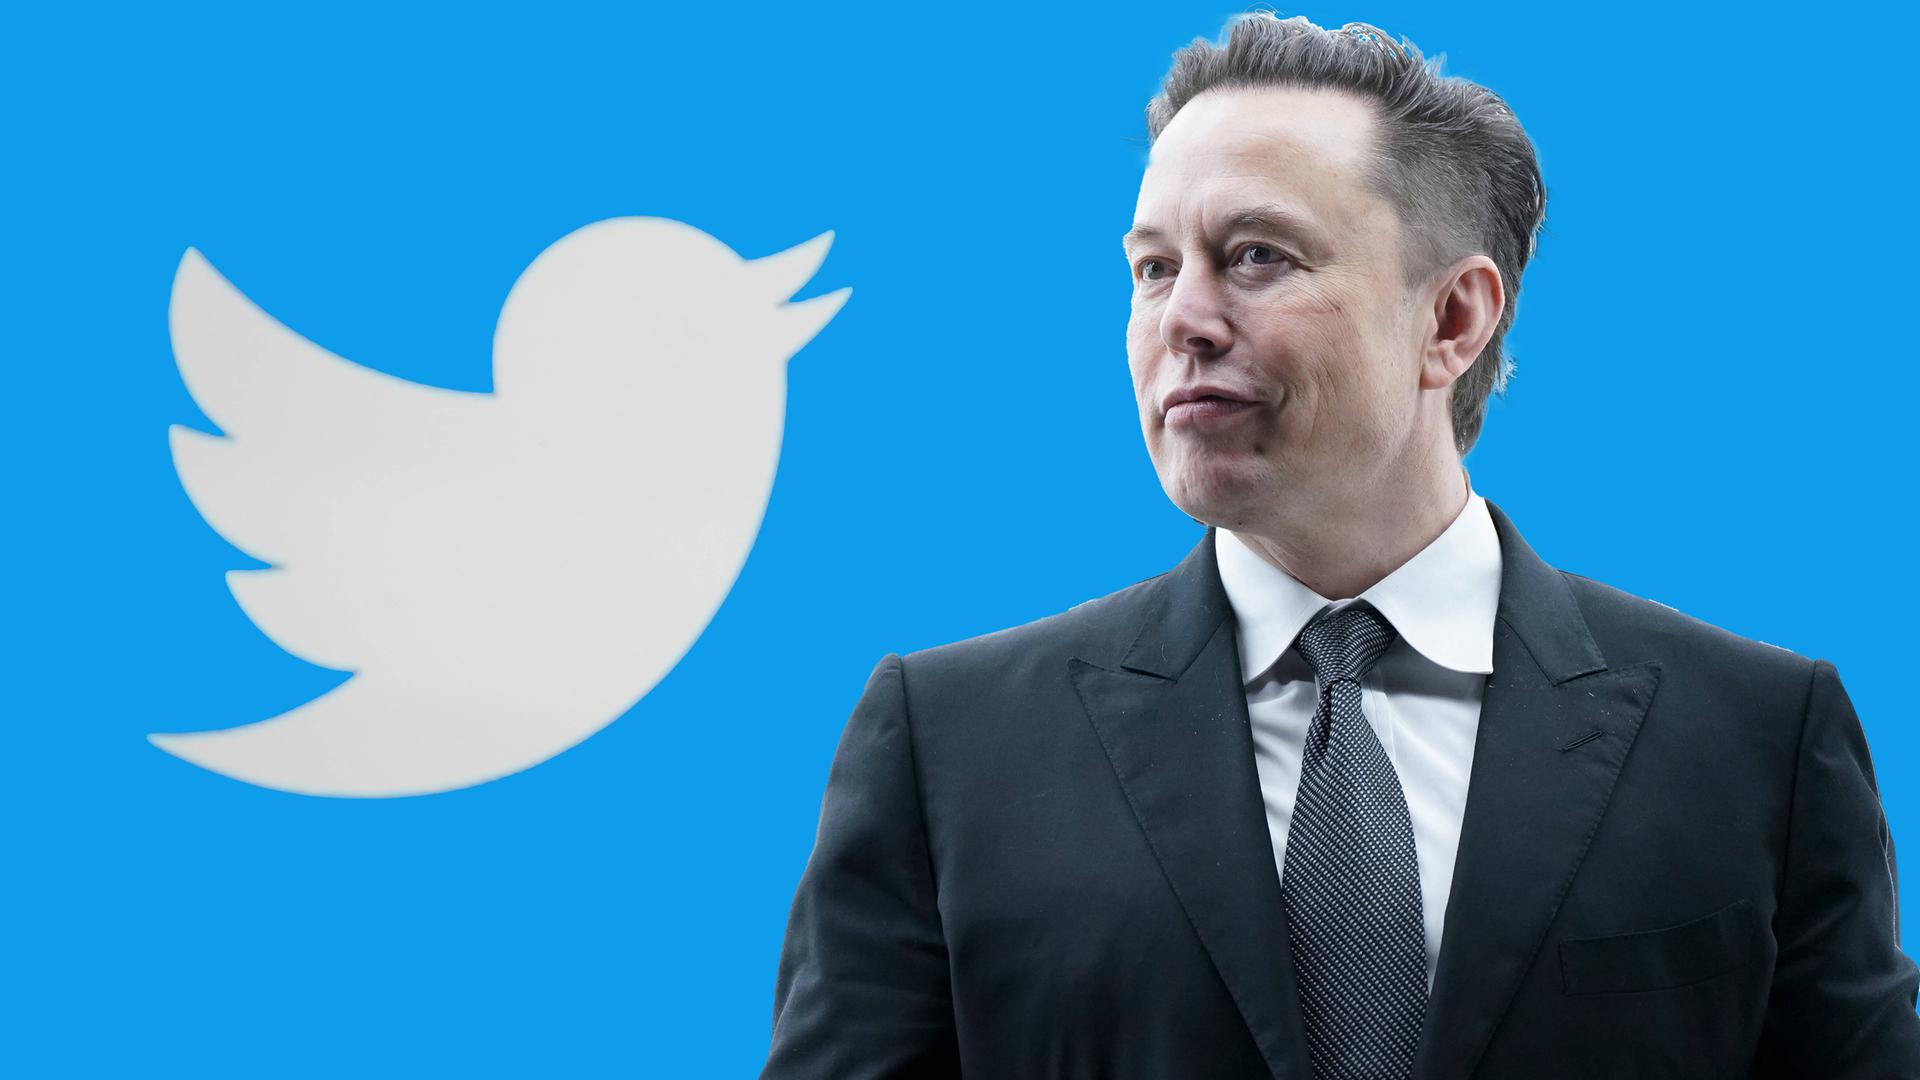 Das Bild zeigt Elon Musk neben dem Symbol für Twitter.